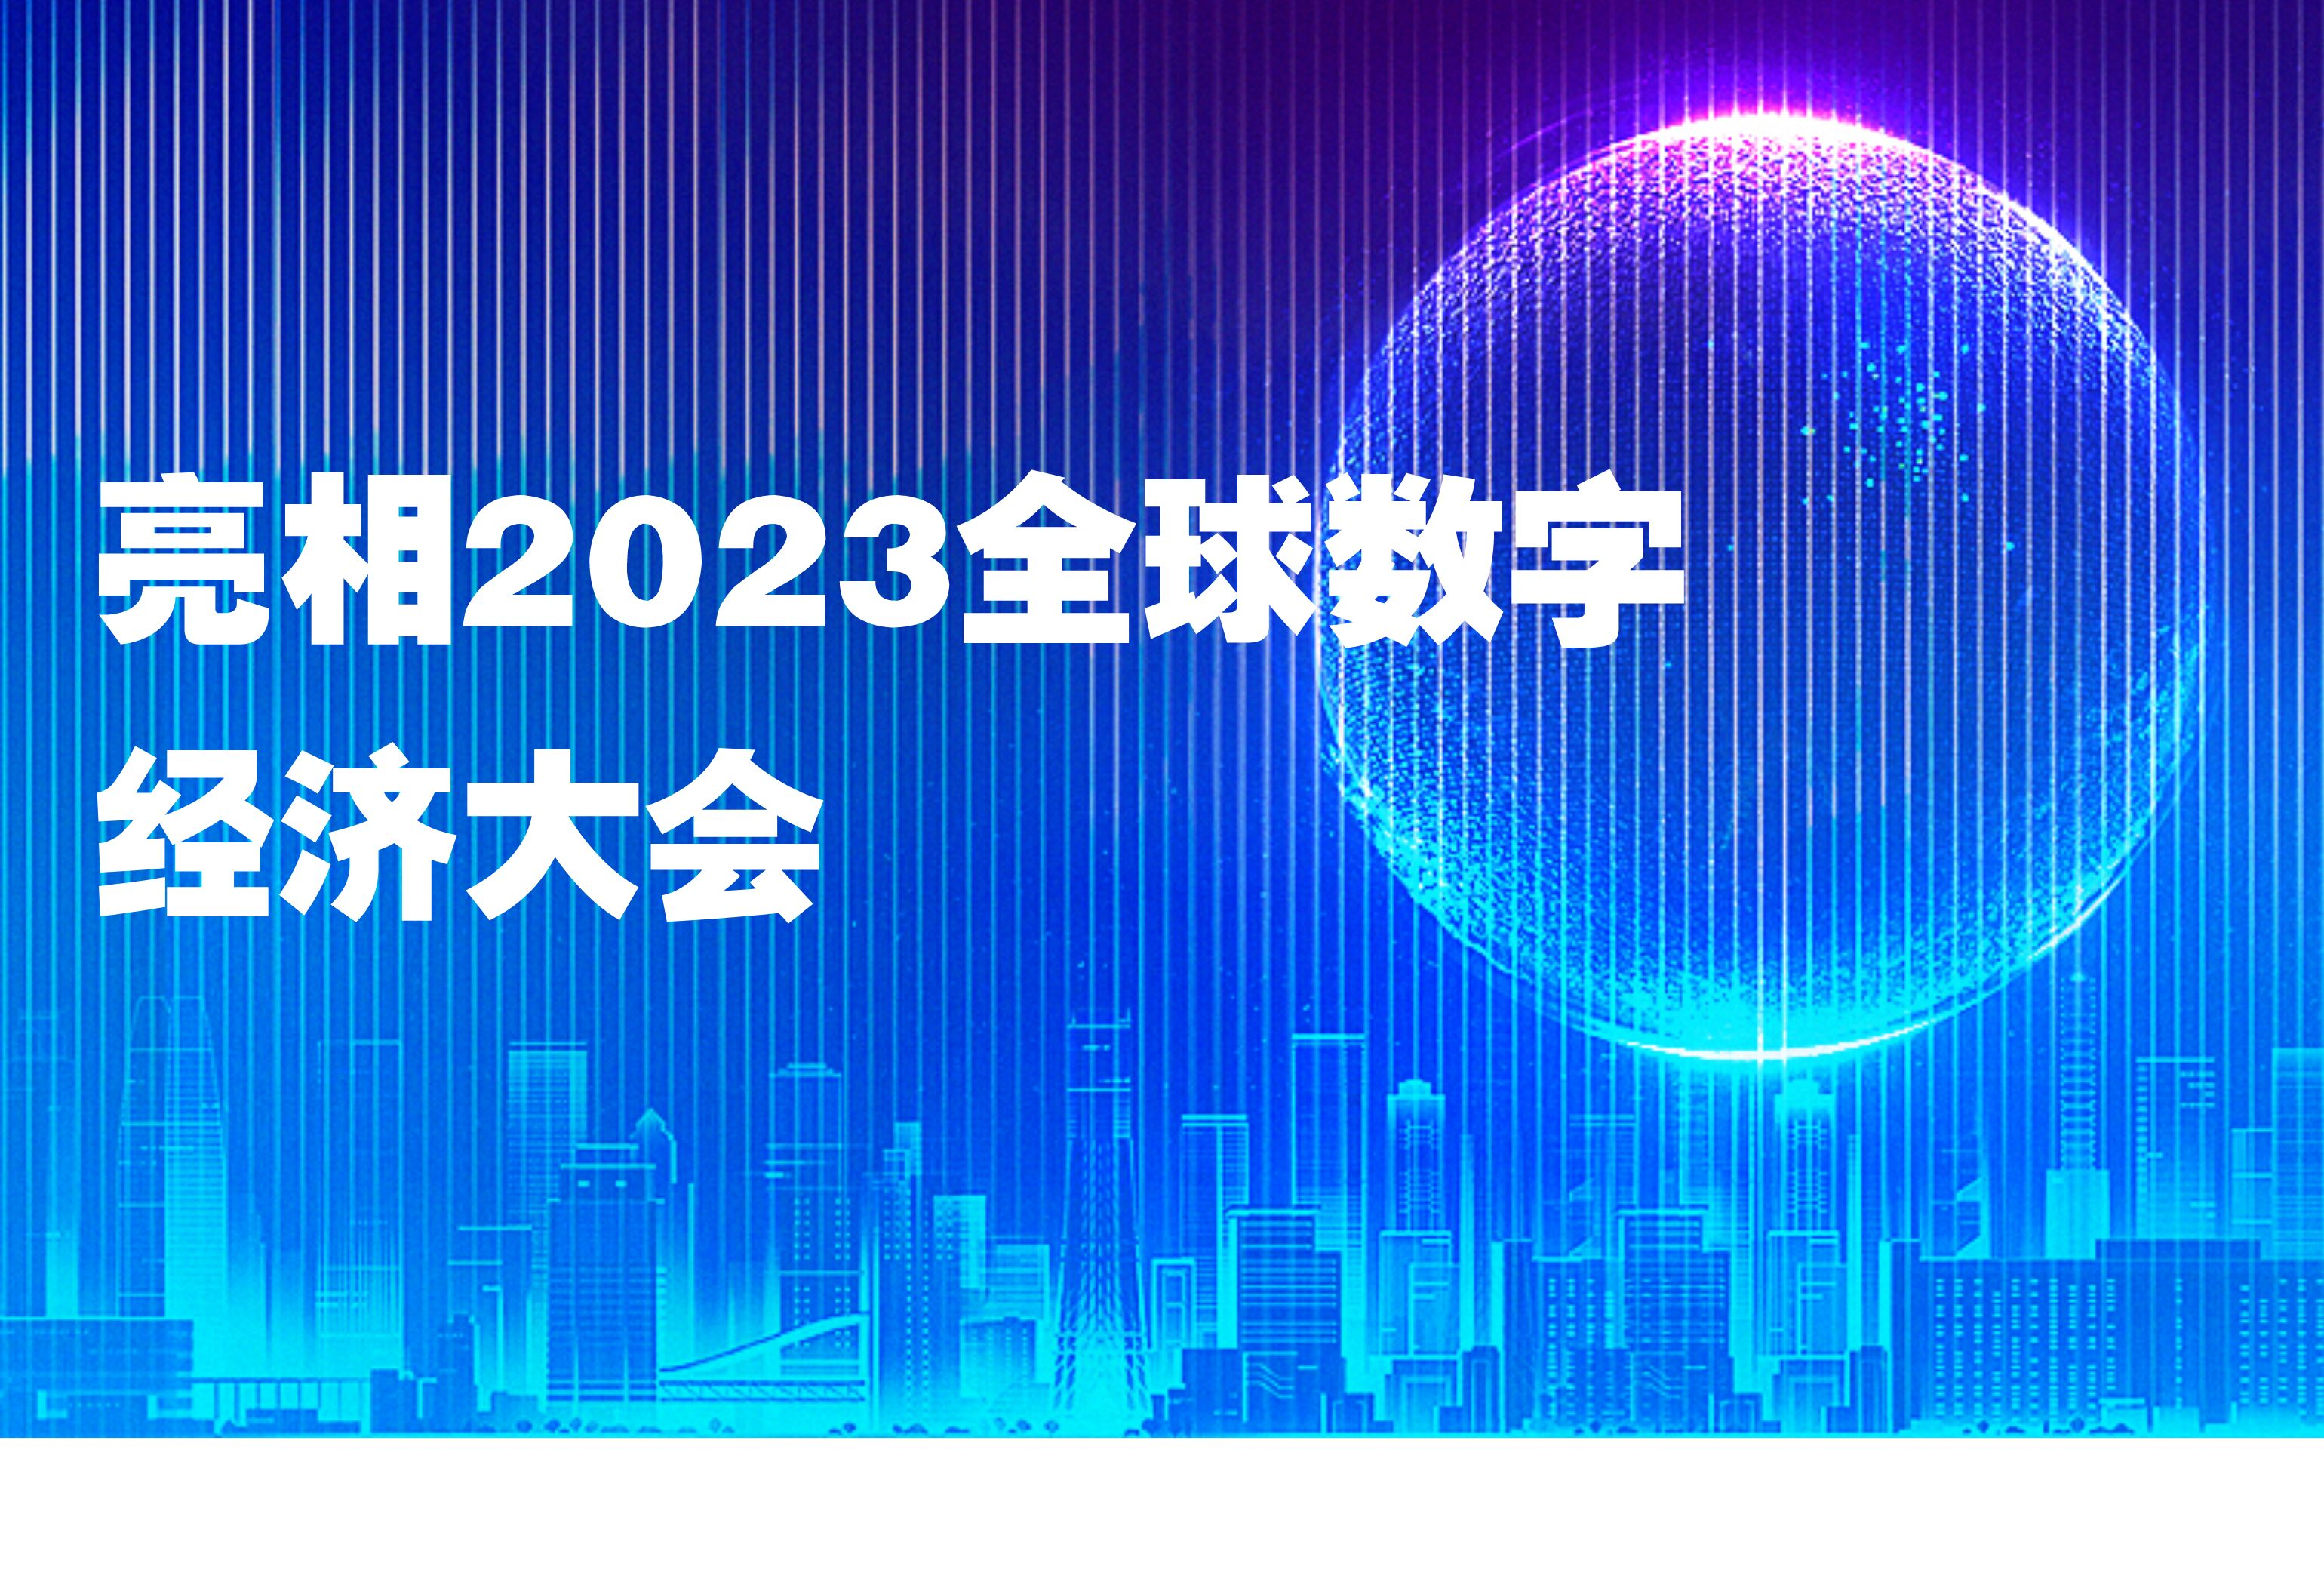 Datablau亮相2023全球数字经济大会